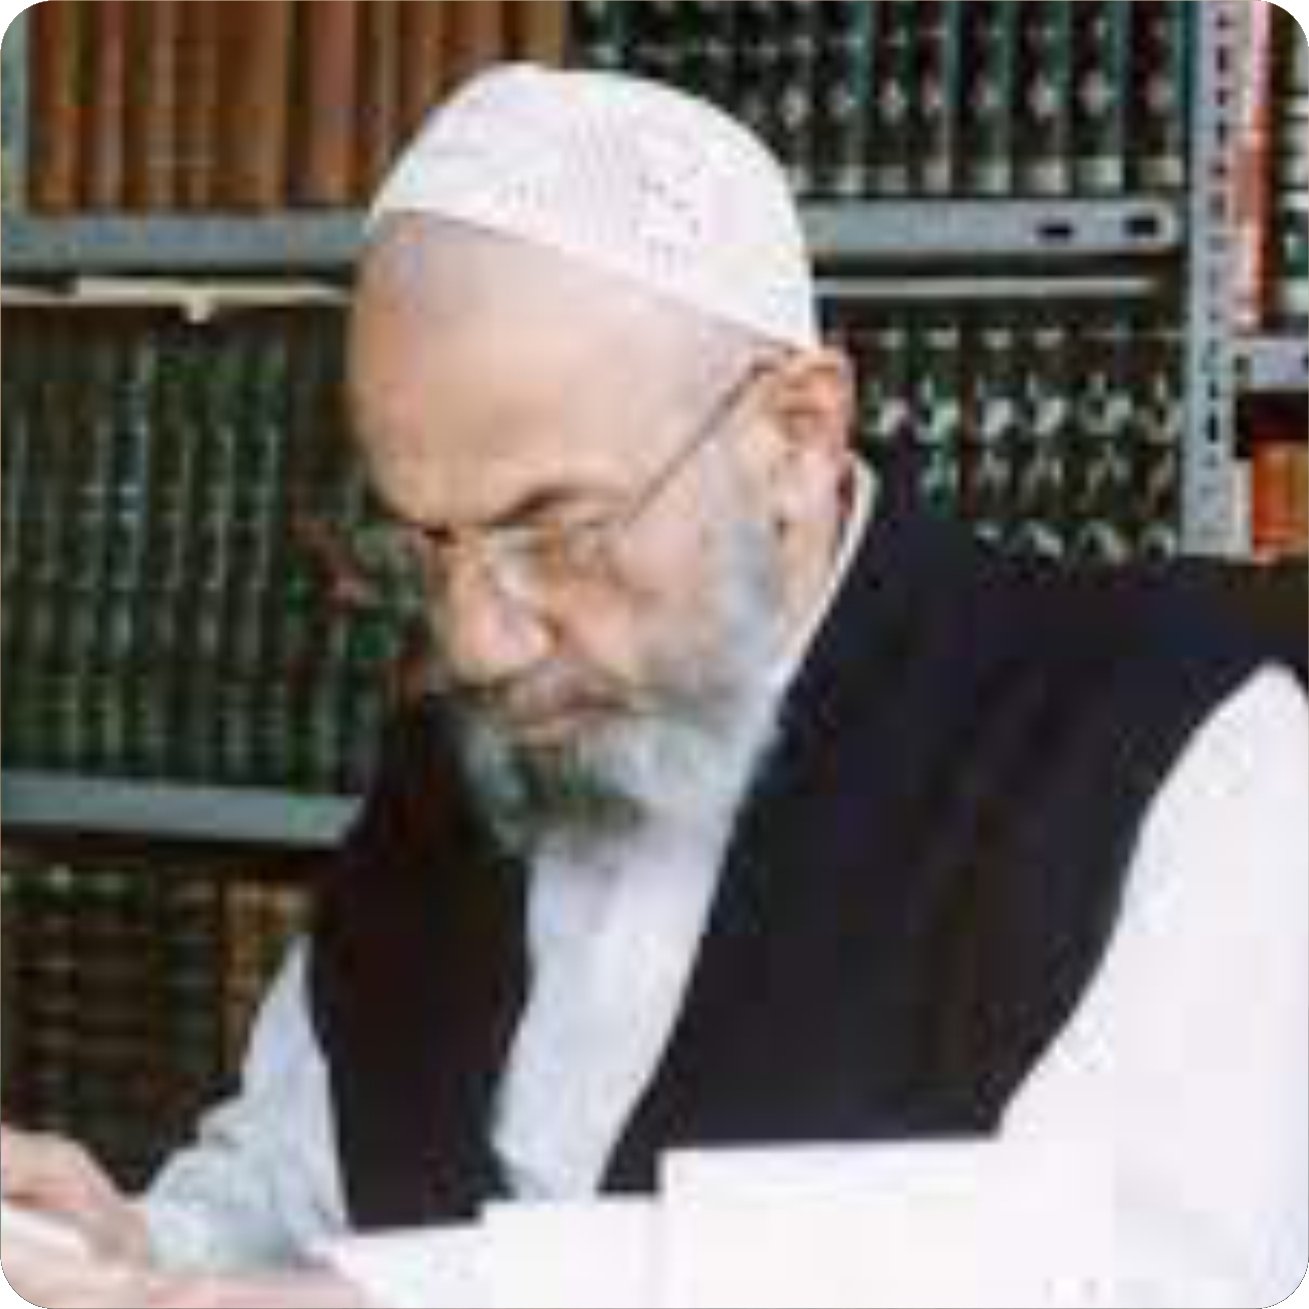 Muhammad Hadi Marifat